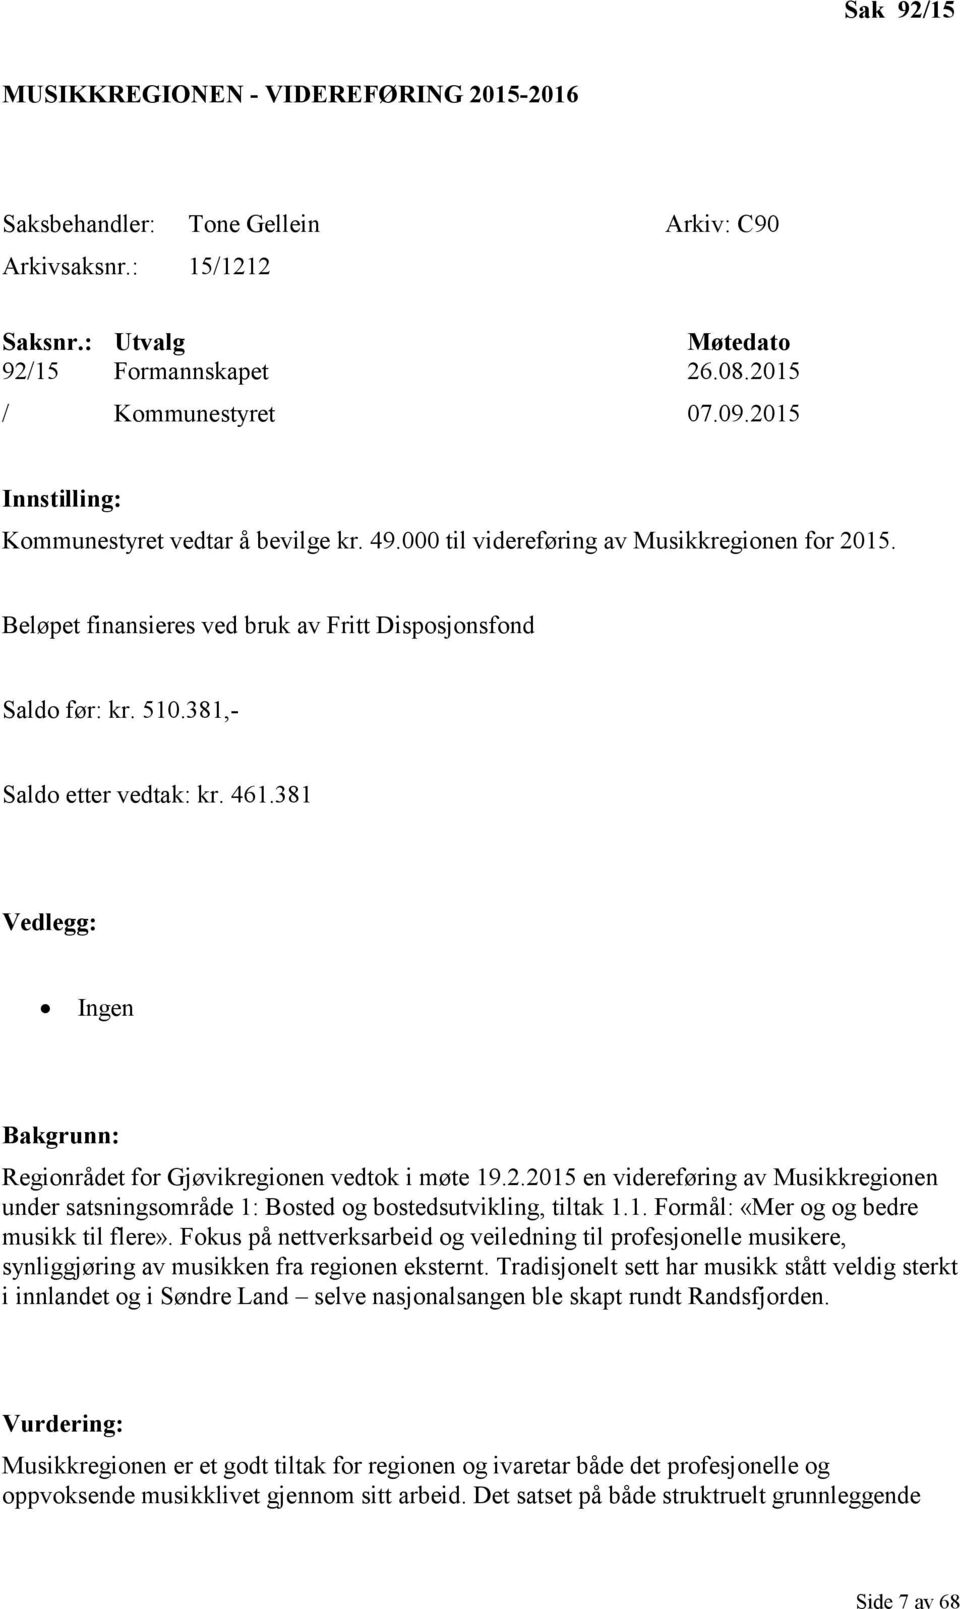 381,- Saldo etter vedtak: kr. 461.381 Vedlegg: Ingen Bakgrunn: Regionrådet for Gjøvikregionen vedtok i møte 19.2.